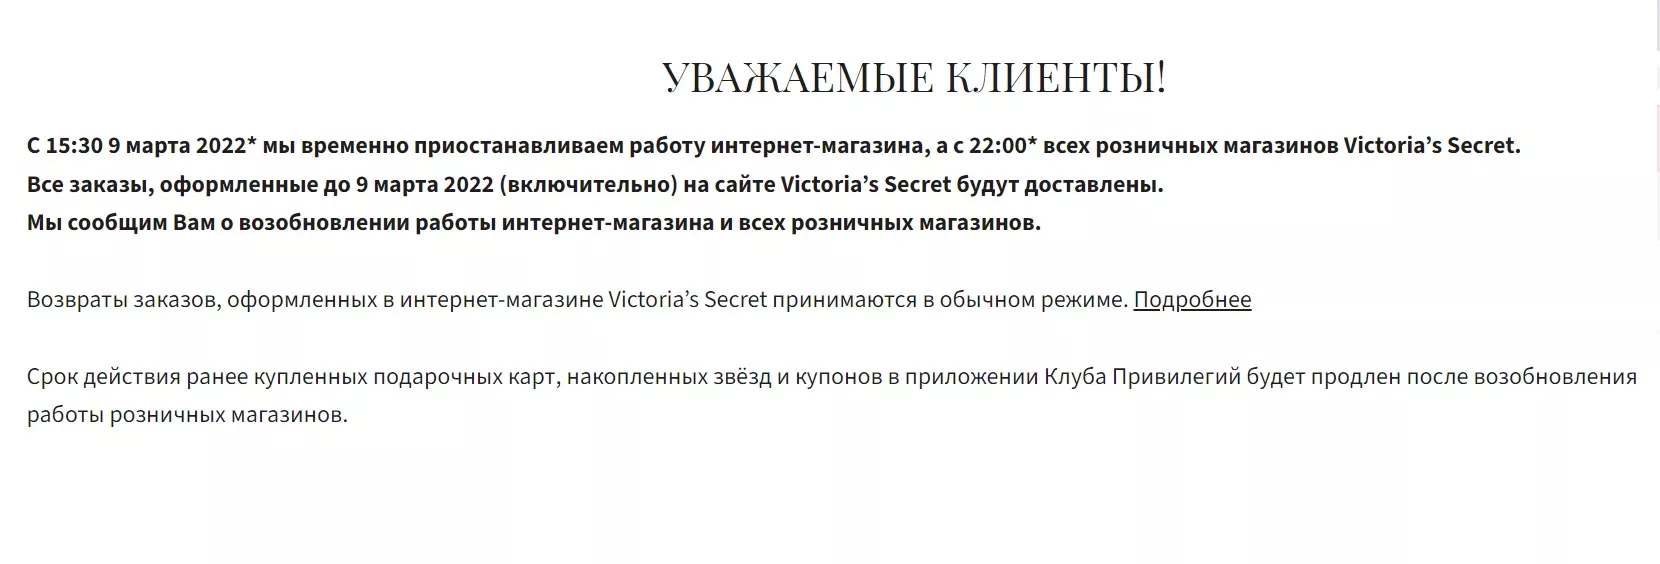 Бренд нижнего белья Victoria's Secret приостанавливает работу по всей территории России